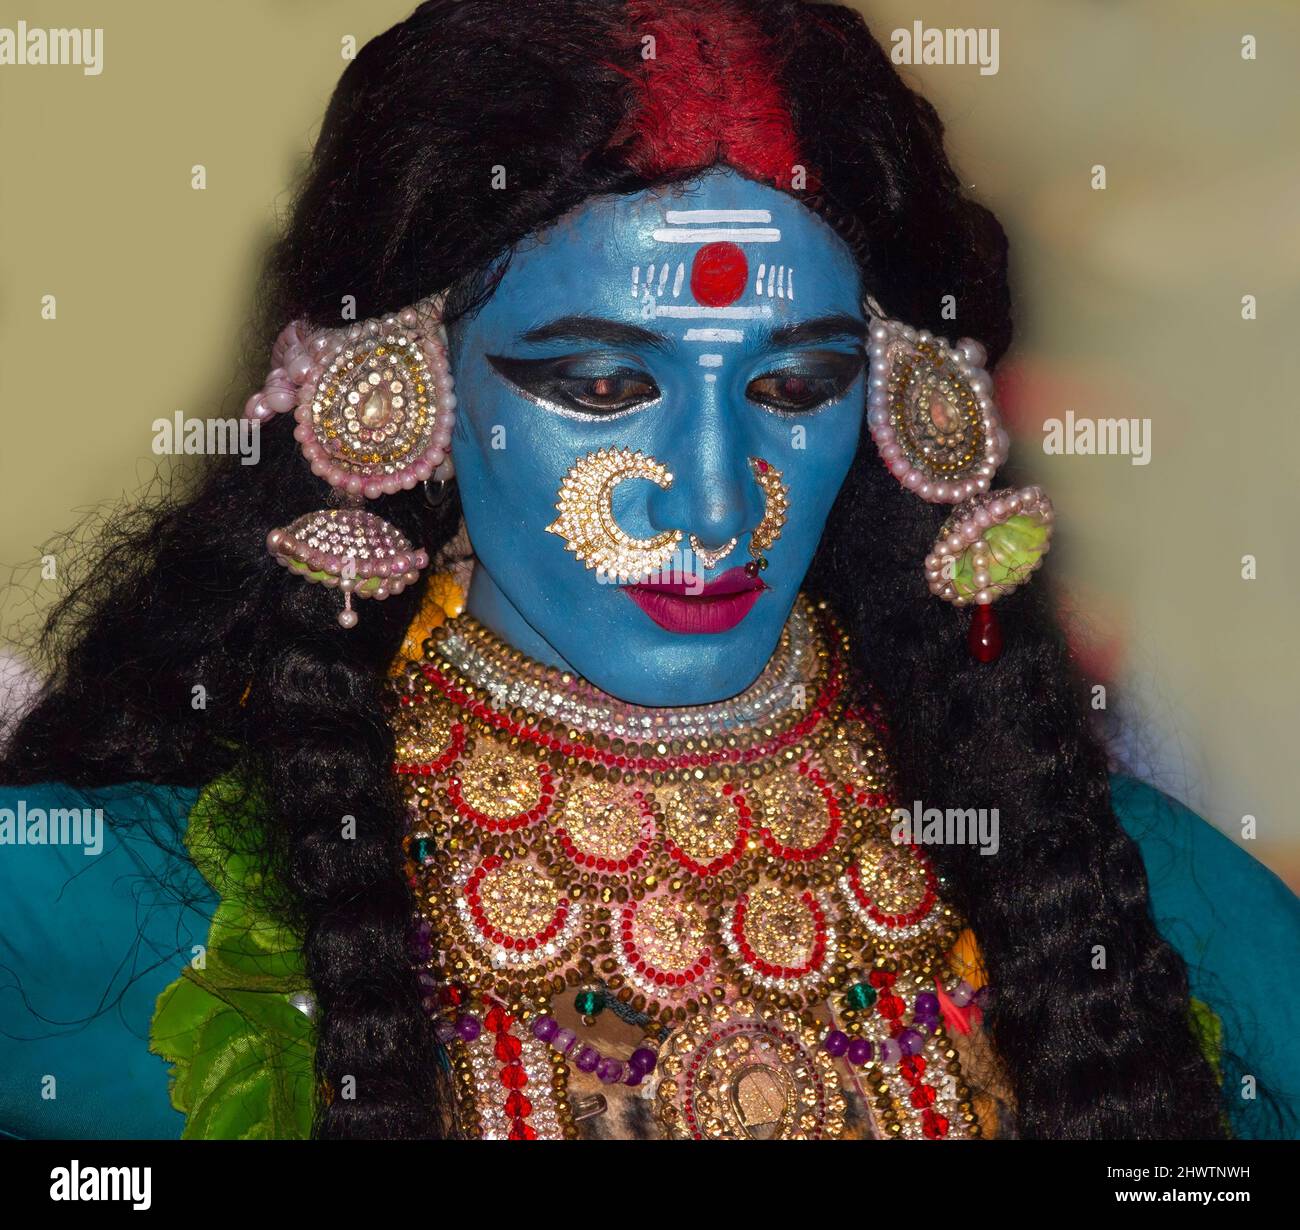 Un artista teatral vestido por la diosa india durante una actuación en la celebración de Ganapathi en Delhi, India, el 15th de septiembre de 2021 Foto de stock